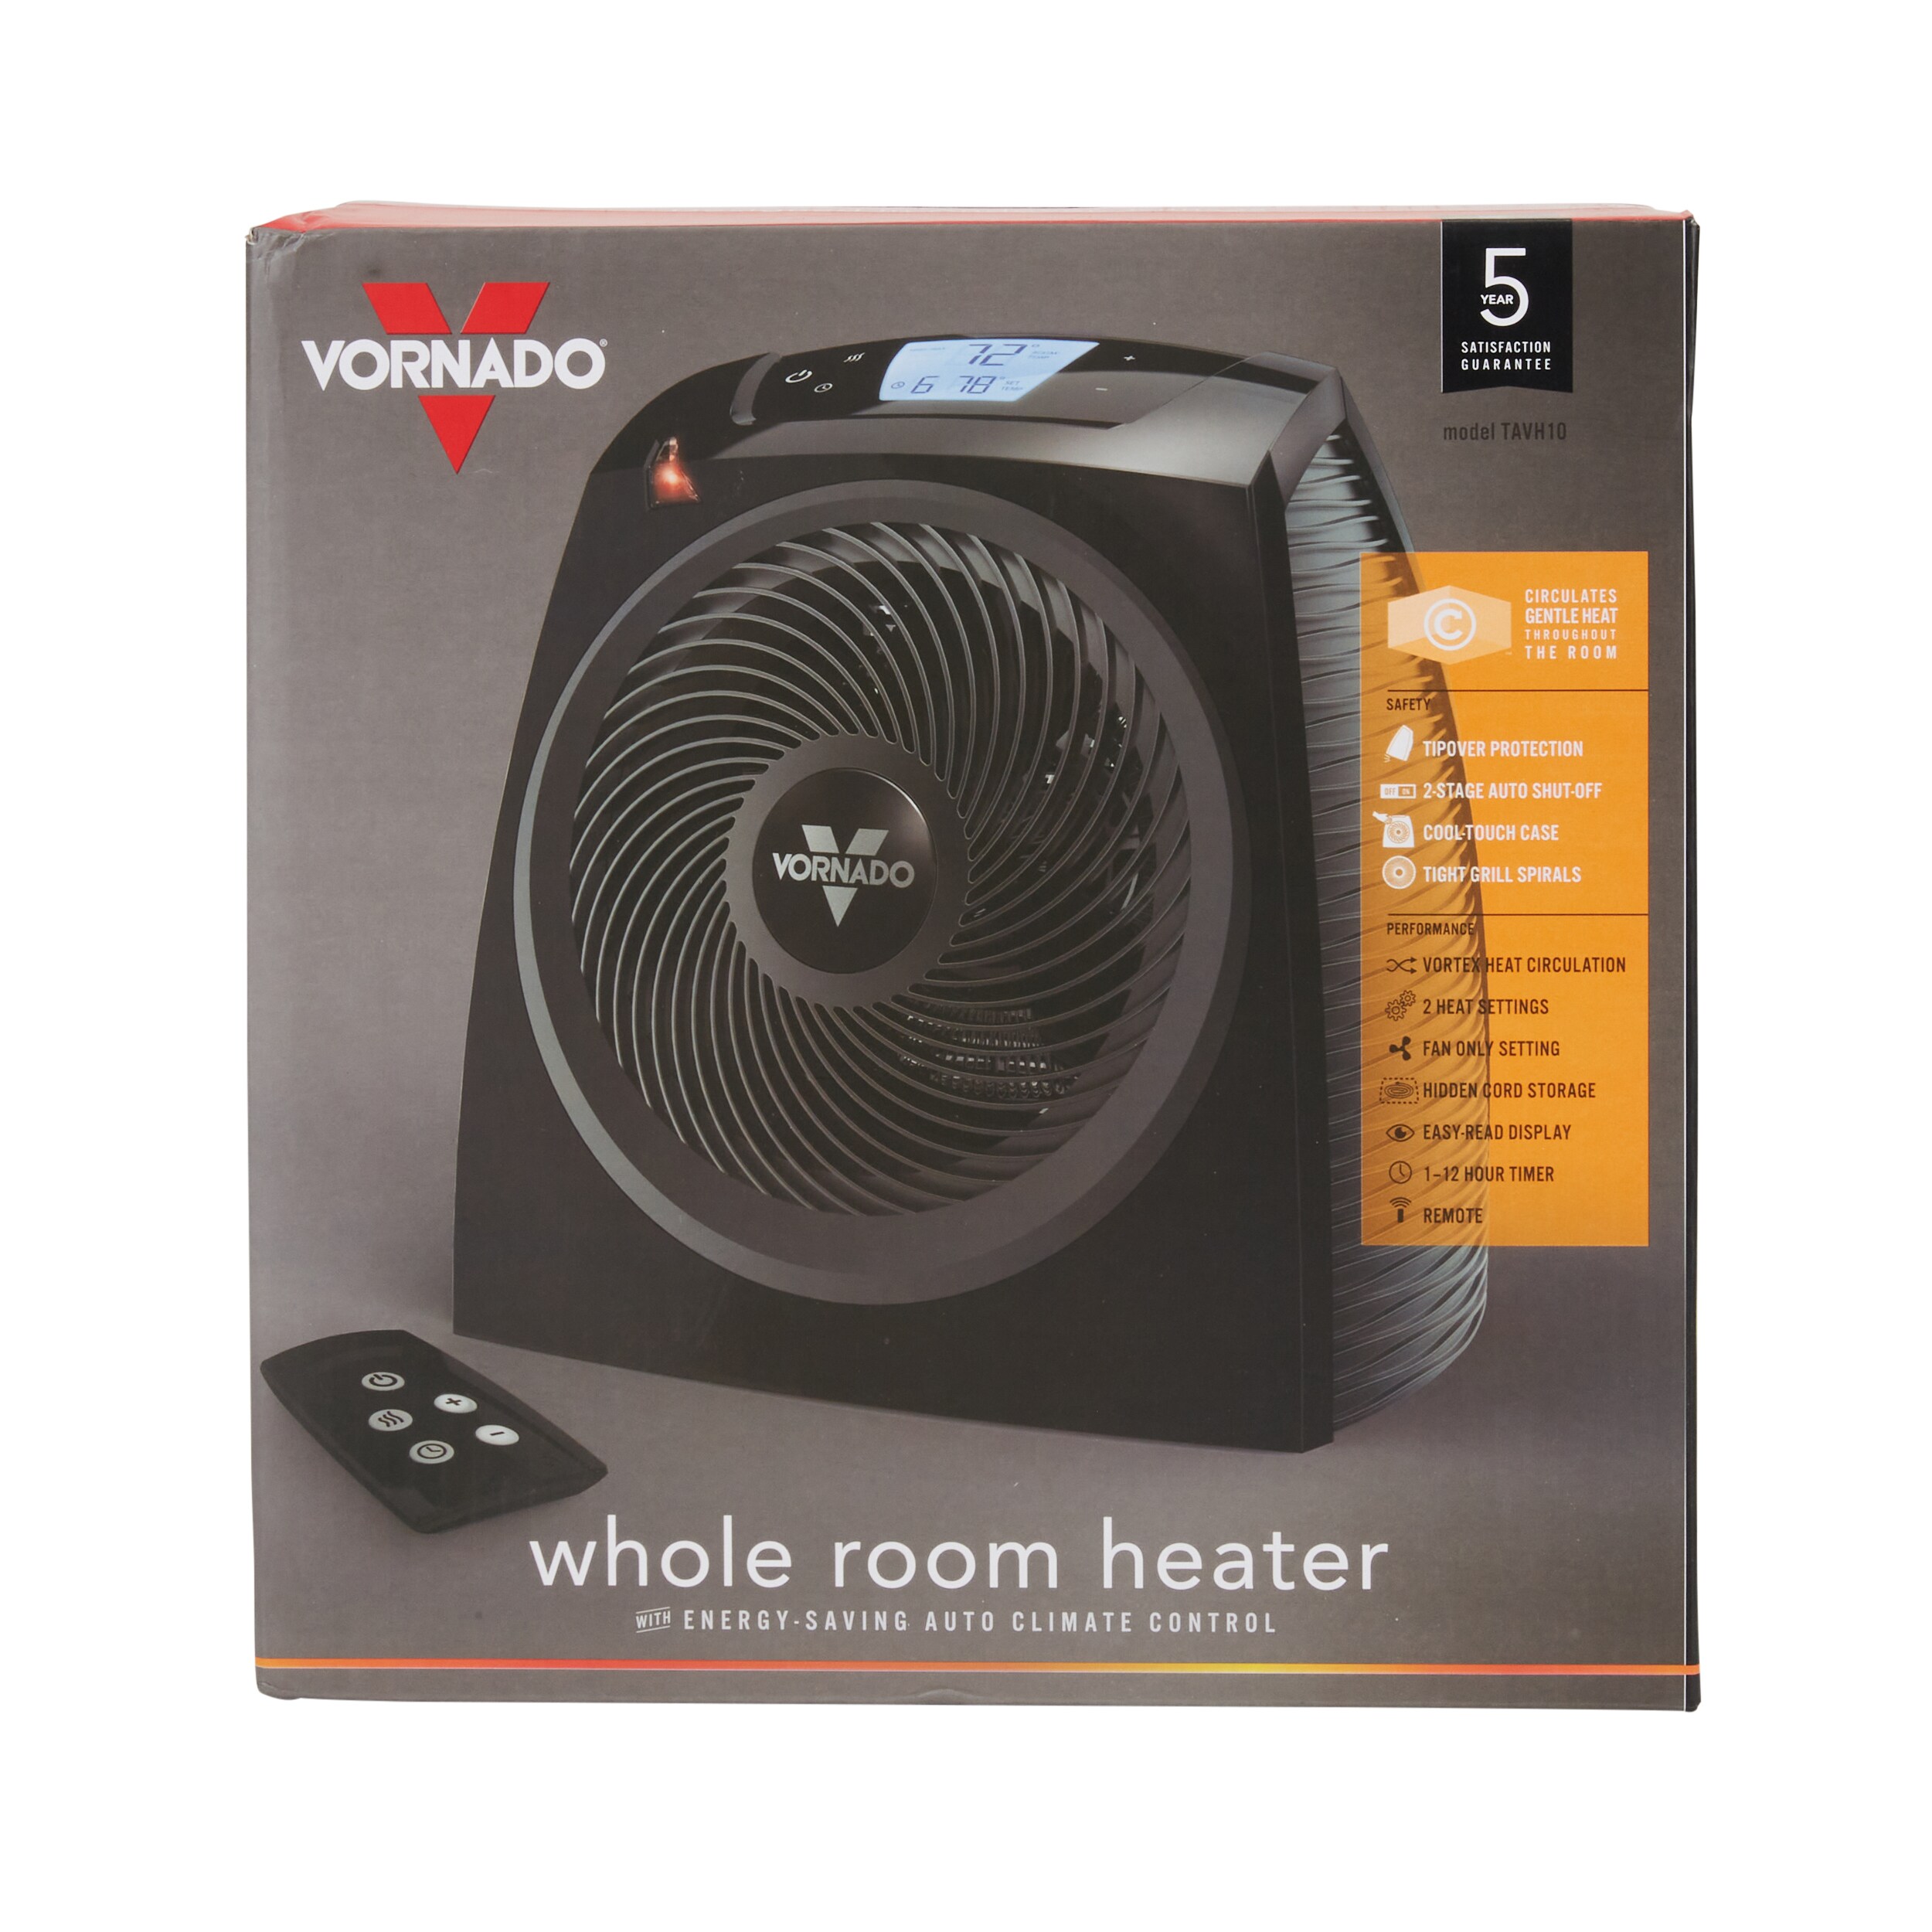 Used Vornado 1500 Watt Vortex Circulation Auto Climate Metal Space Heater 